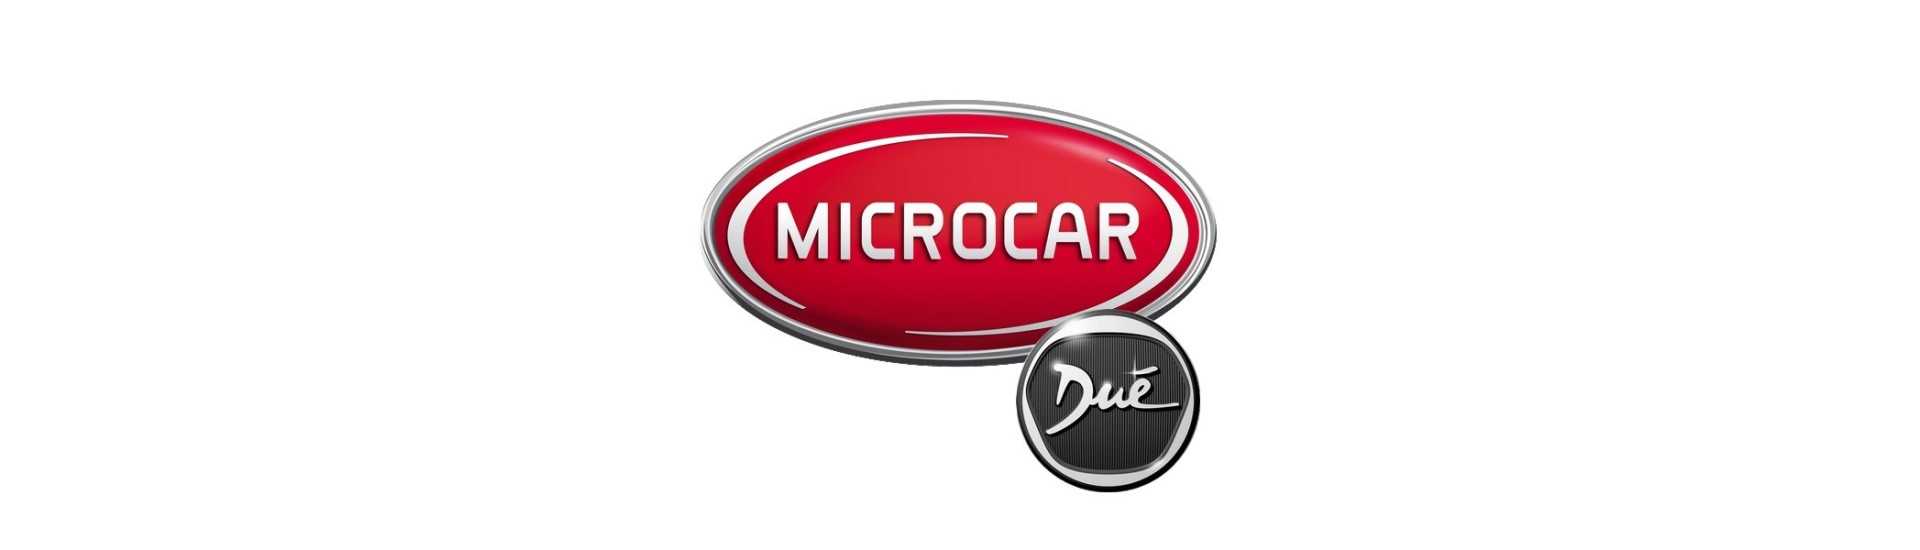 Blocco ruota al miglior prezzo per auto senza patente Microcar Dué